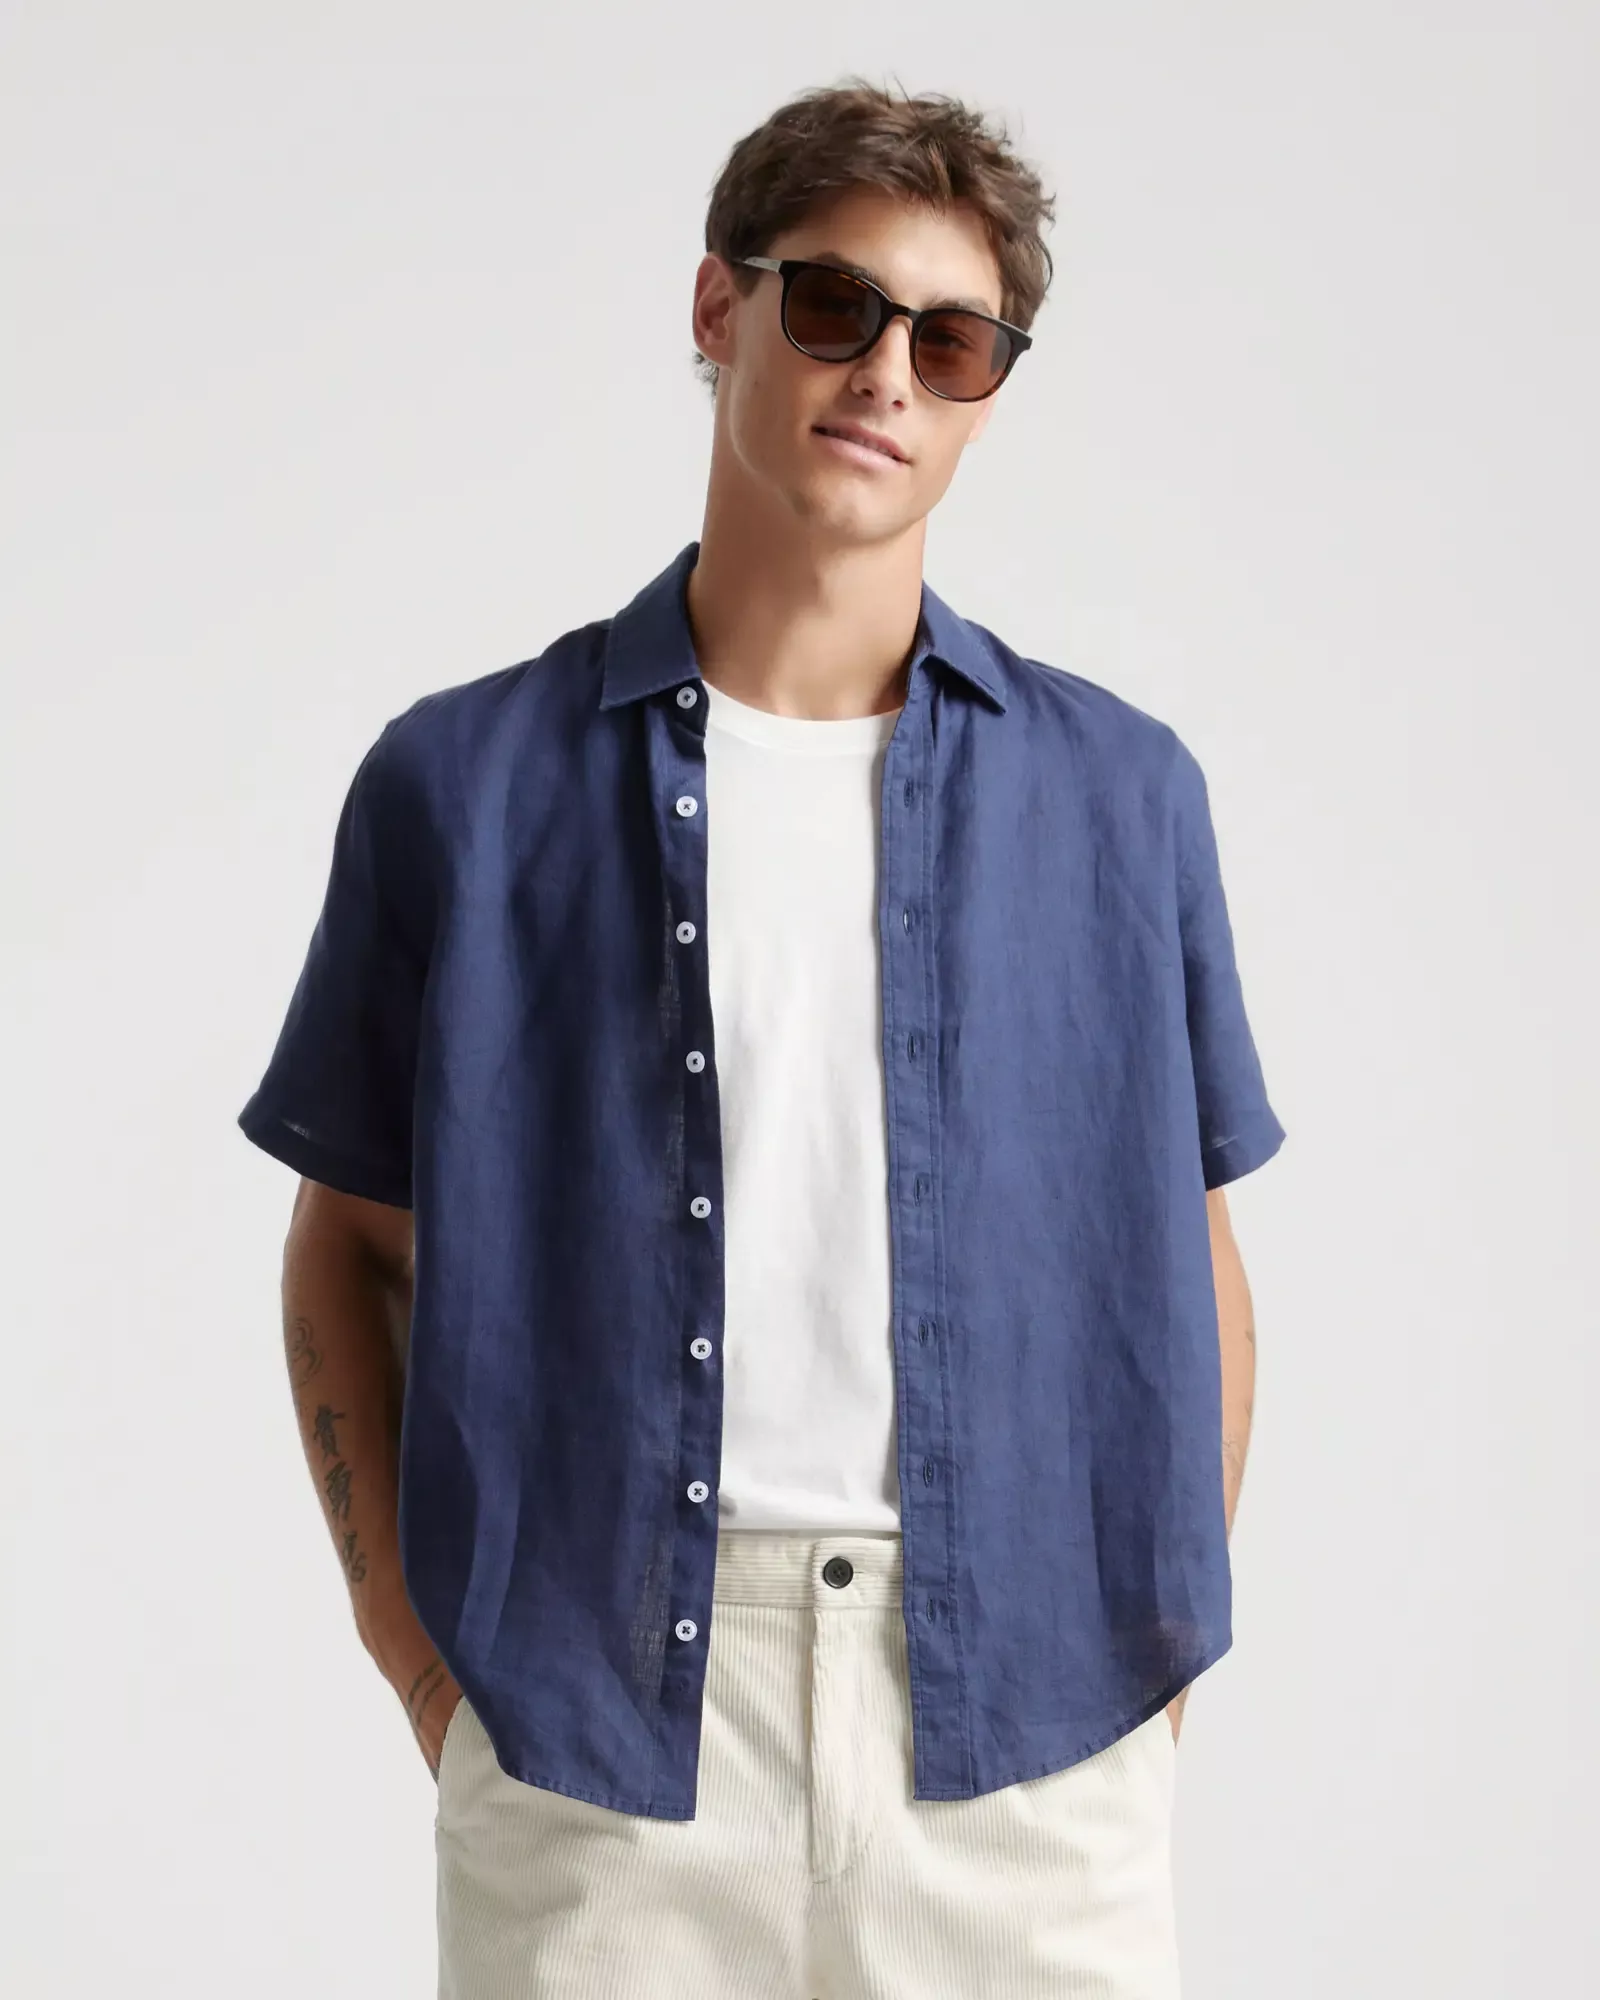 Men's 100% European Linen Short Sleeve Shirt  Short sleeve linen shirt,  European linens, Linen short